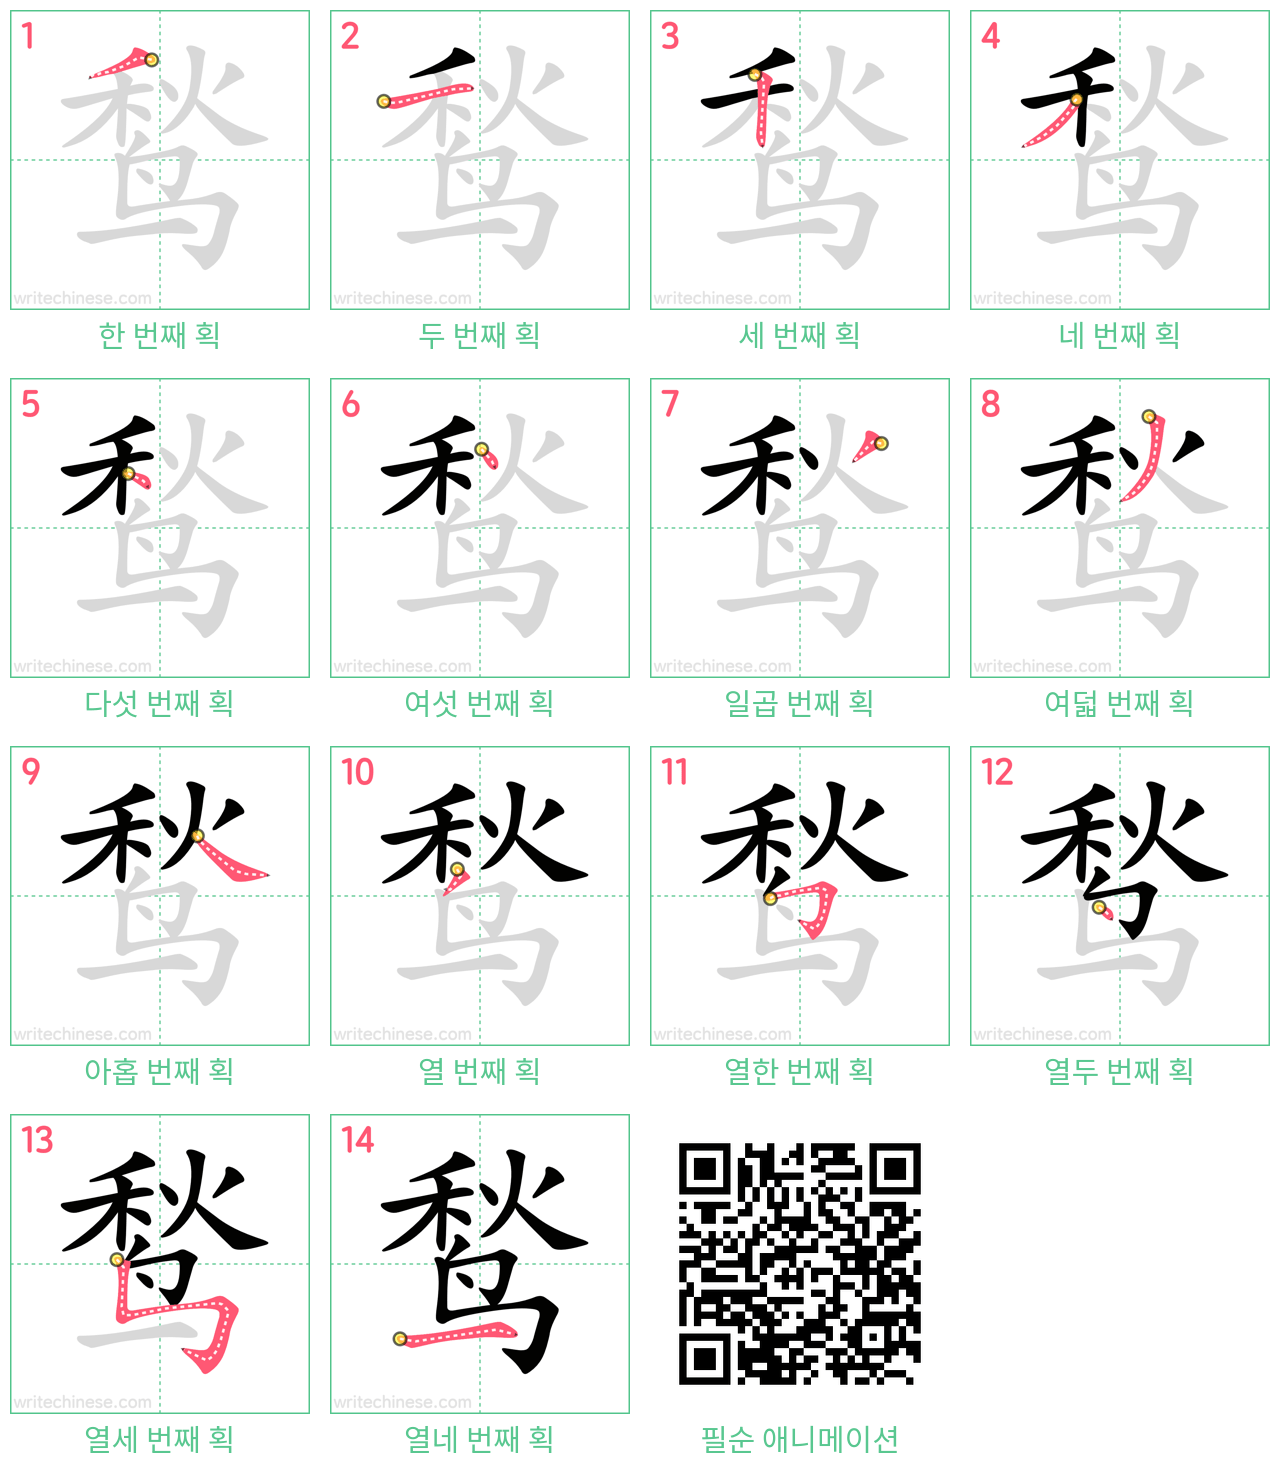 鹙 step-by-step stroke order diagrams